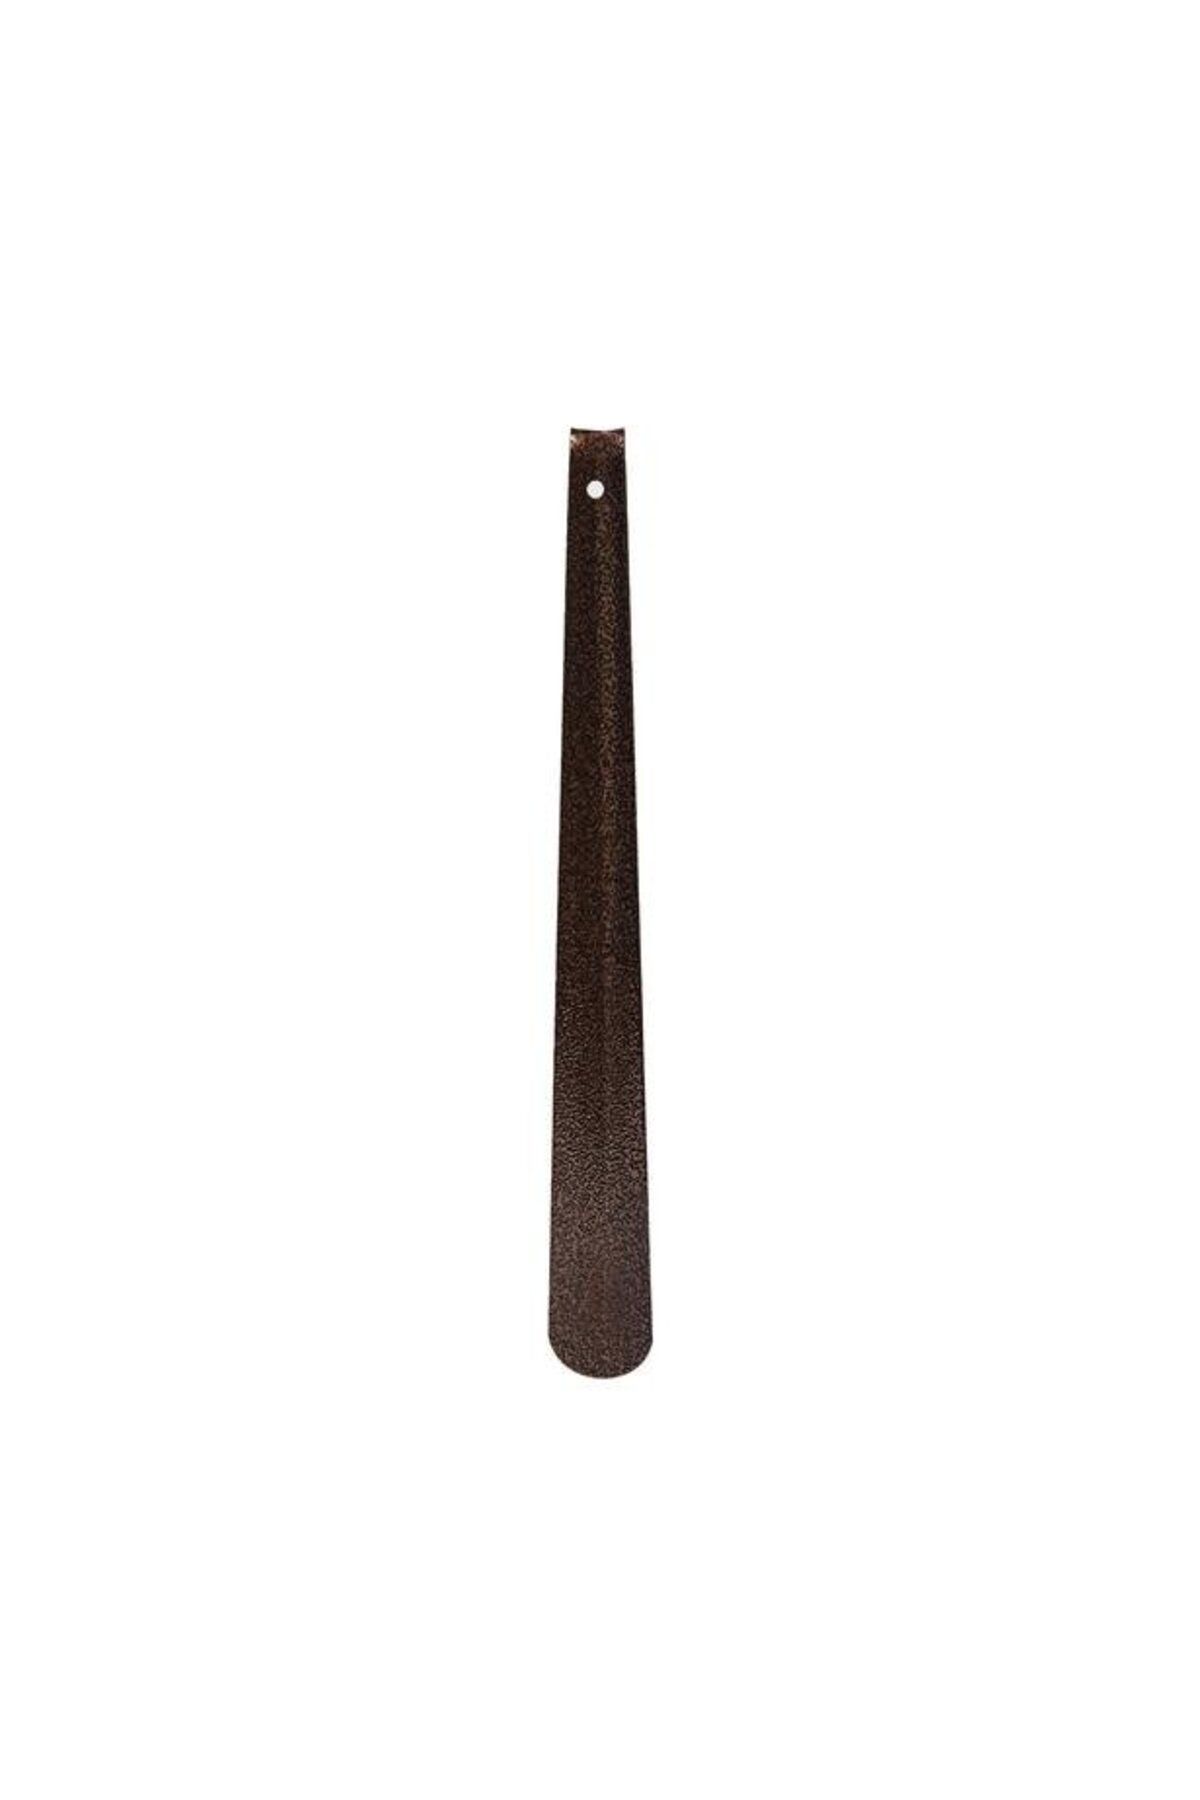 Atadan Metal Ayakkabı Çekeceği - Kahverengi - 40 cm  (  1  ADET  )